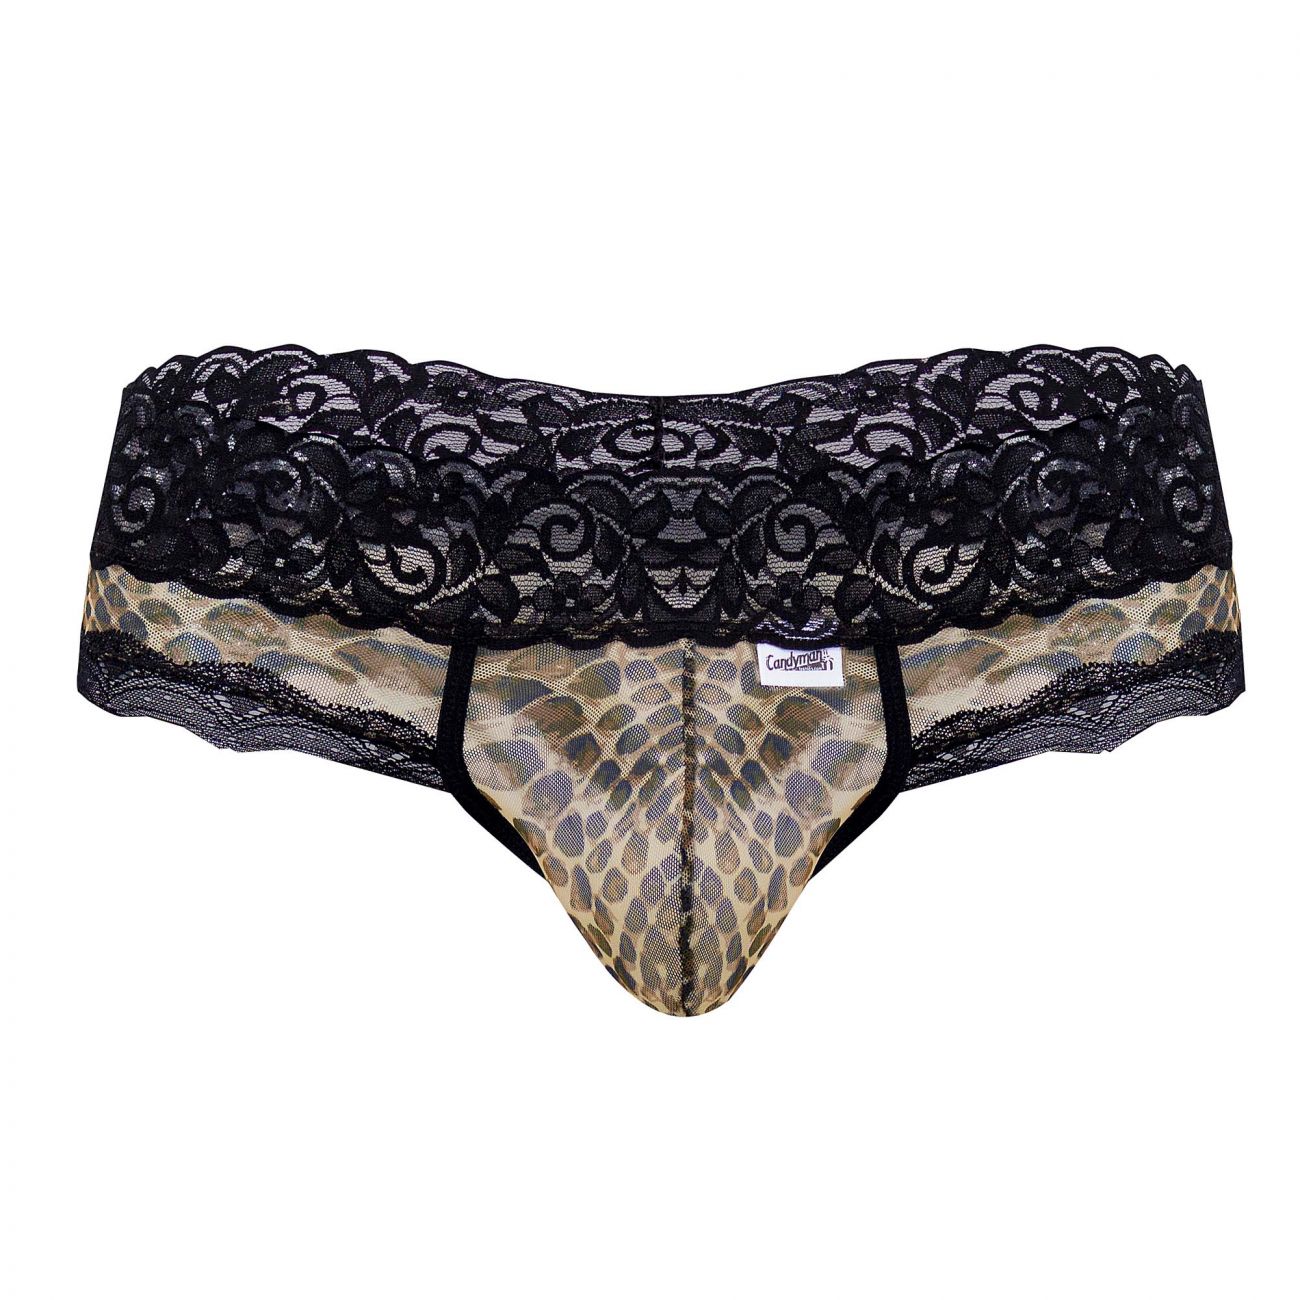 CandyMan 99596X Mesh-Lace Thongs Leopard Print Plus Sizes